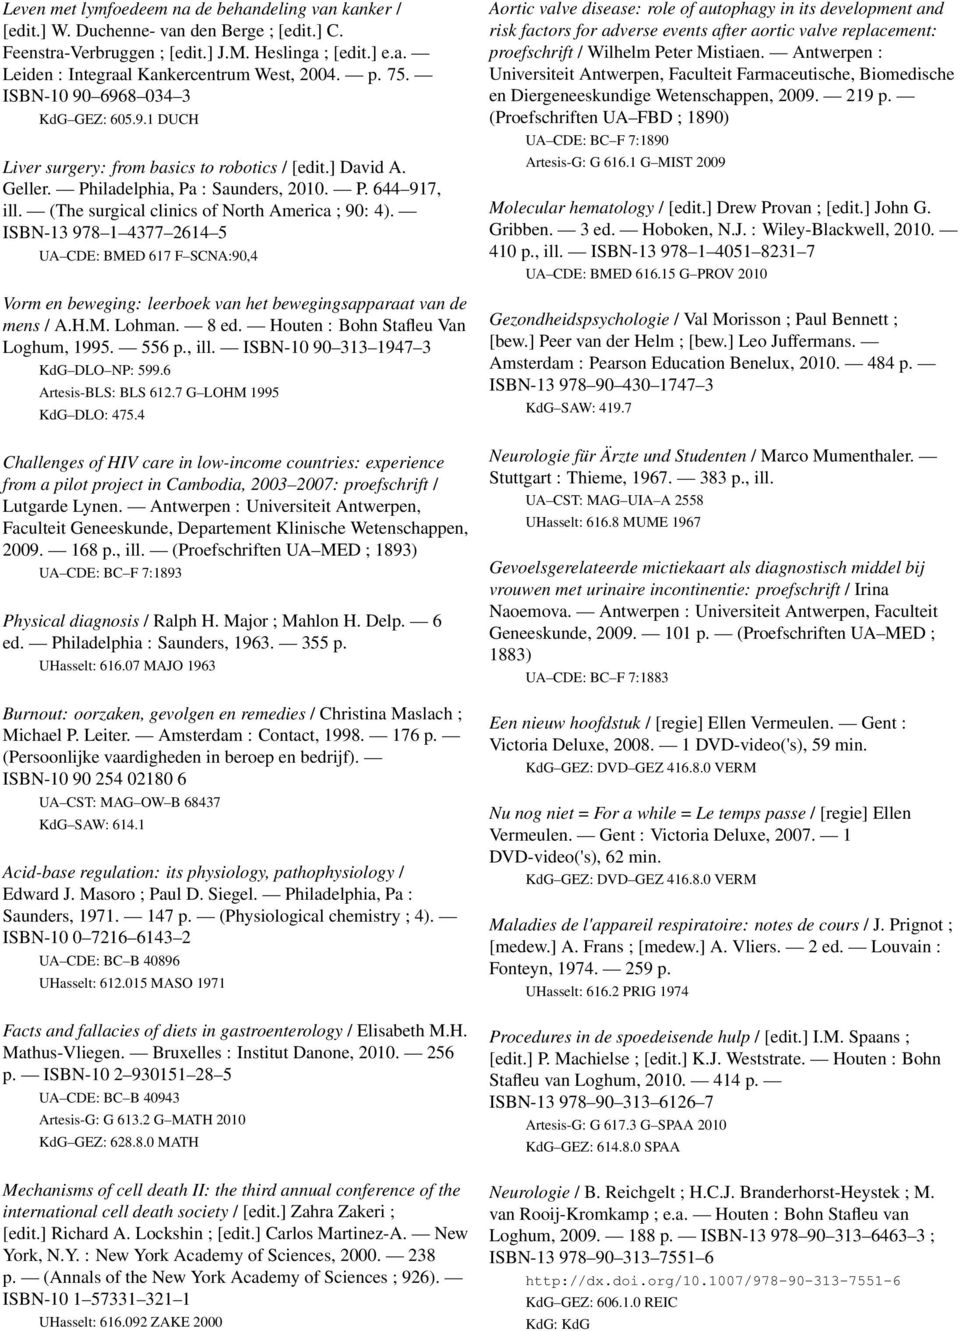 (The surgical clinics of North America ; 90: 4). ISBN-13 978 1 4377 2614 5 UA CDE: BMED 617 F SCNA:90,4 Vorm en beweging: leerboek van het bewegingsapparaat van de mens / A.H.M. Lohman. 8 ed.